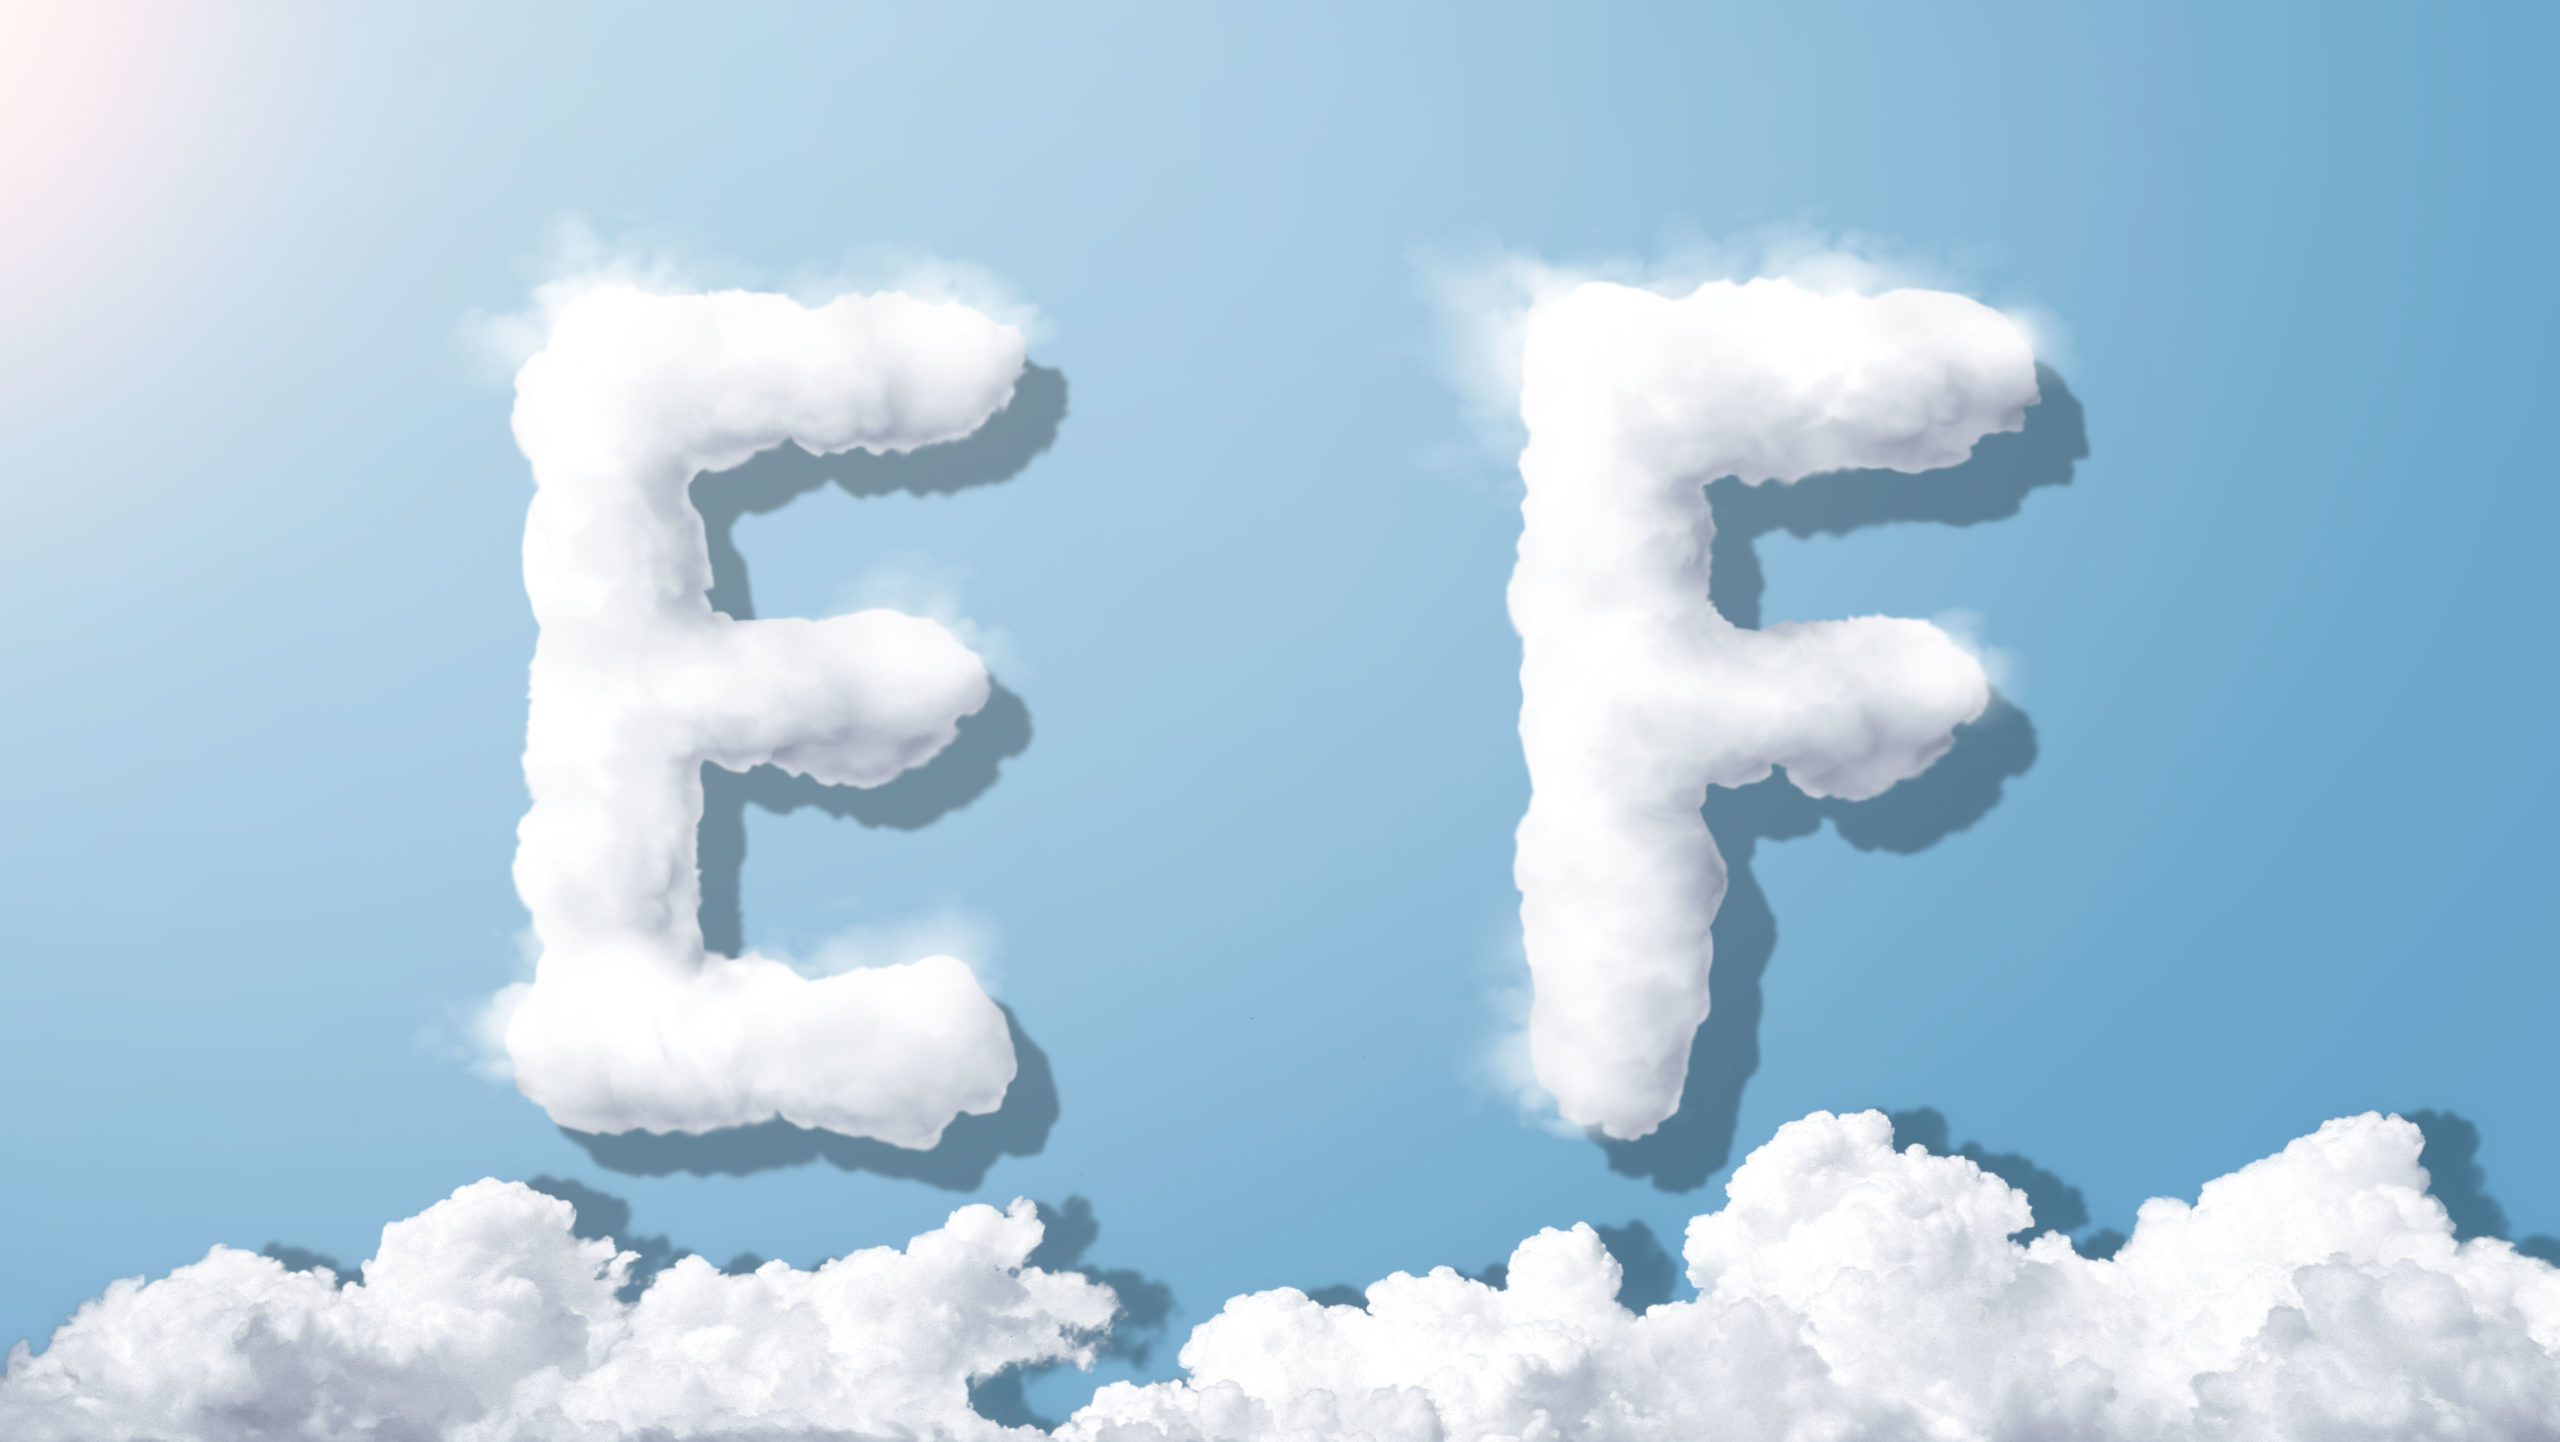 字母“EF”蓝天背景白云英文艺术字体蚂蚁素材精选PSD素材插图